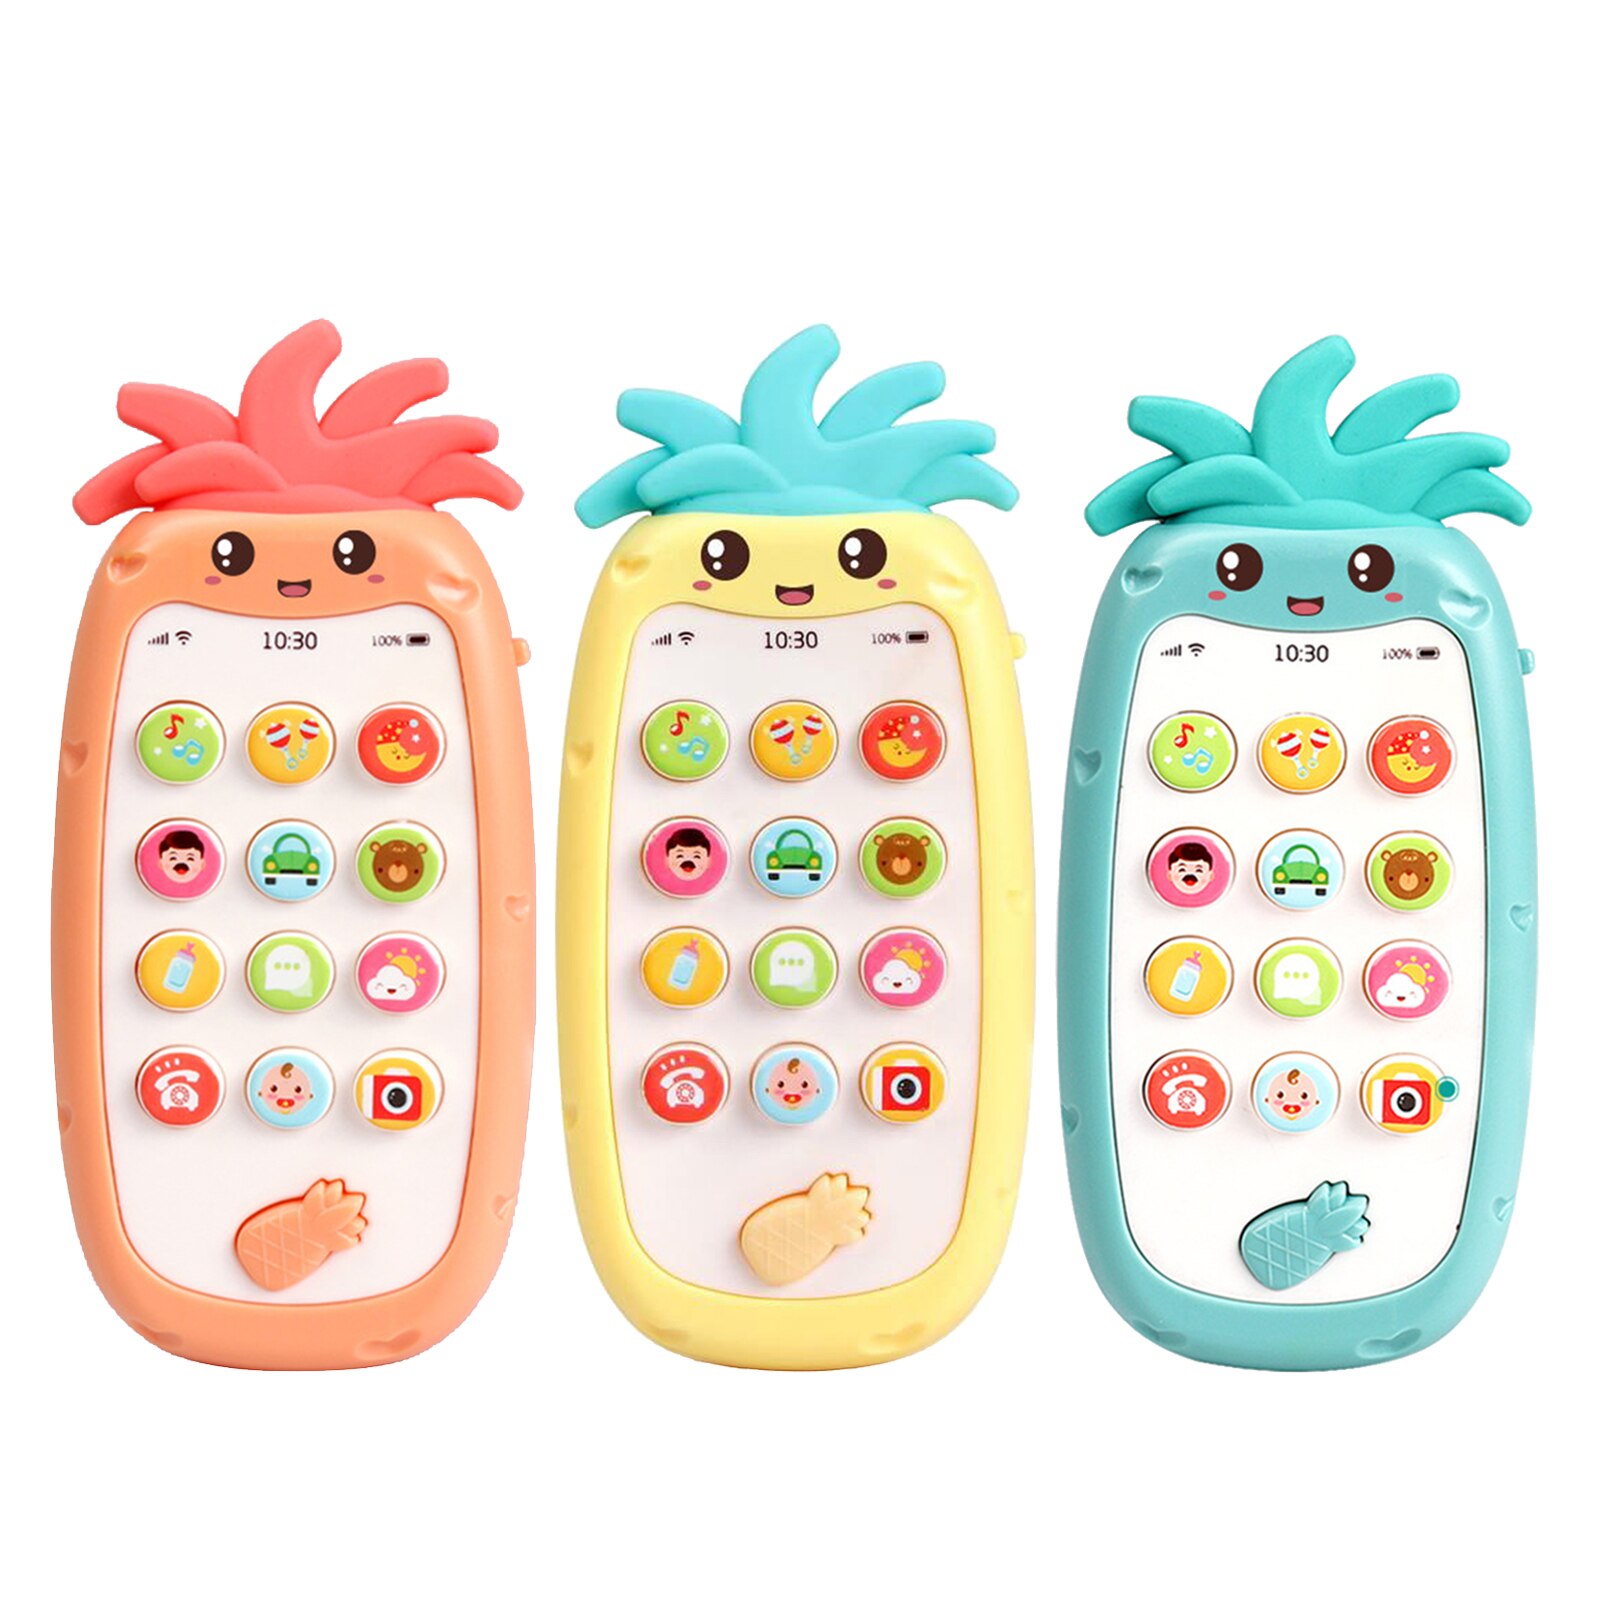 Leuke Telefoon Speelgoed Voor Baby 'S Kinderziektes Speelgoed Smartphone Met Verlichting, Muziek En Geluid